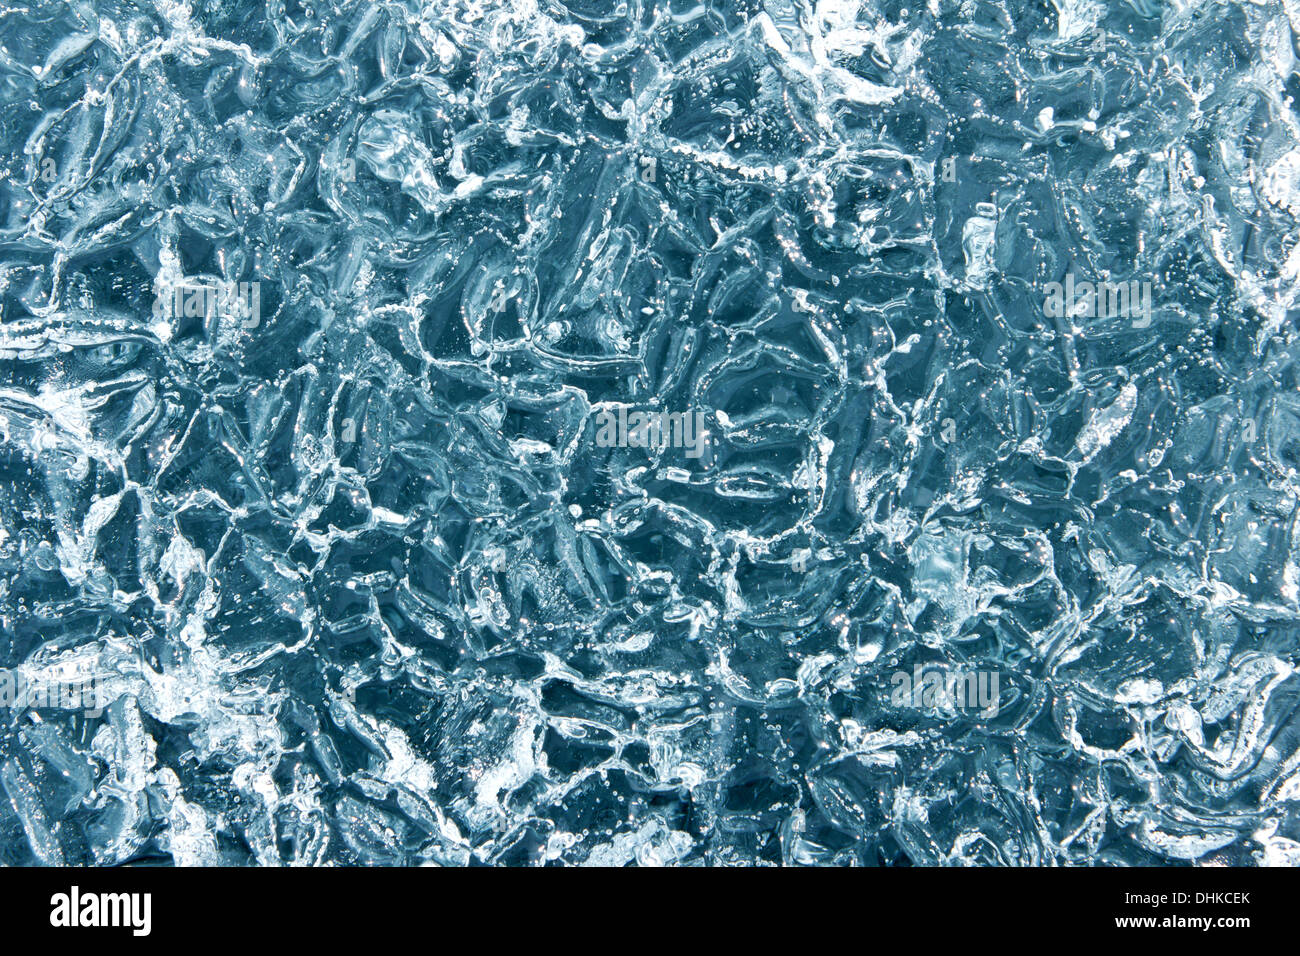 La texture de la glace des bulles de glace pure de Baikal Banque D'Images